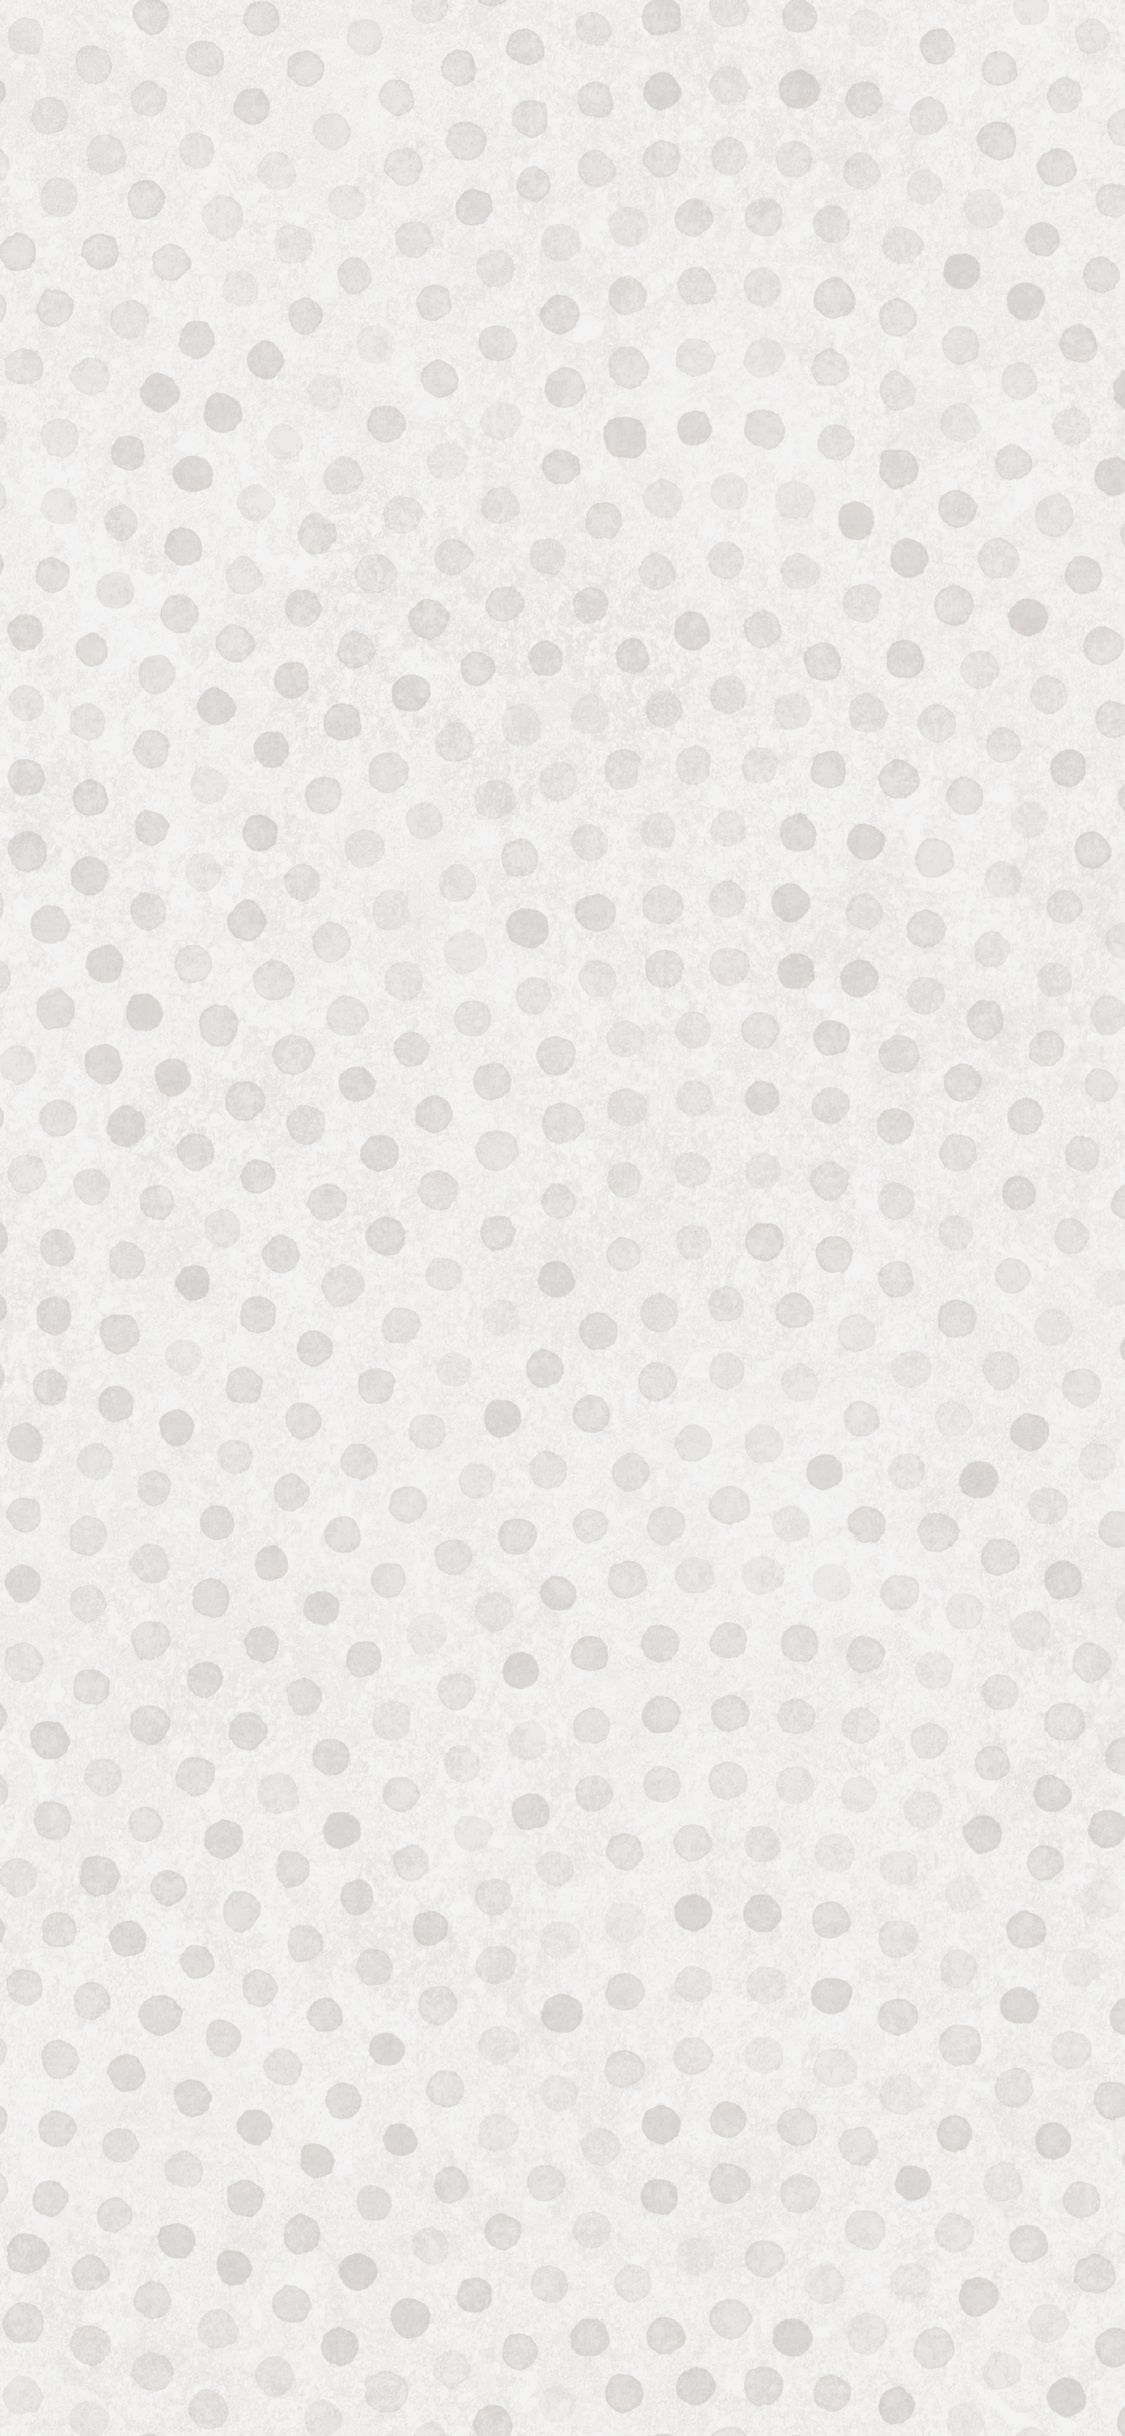 Textile à Pois Blancs et Noirs. Wallpaper in 1125x2436 Resolution